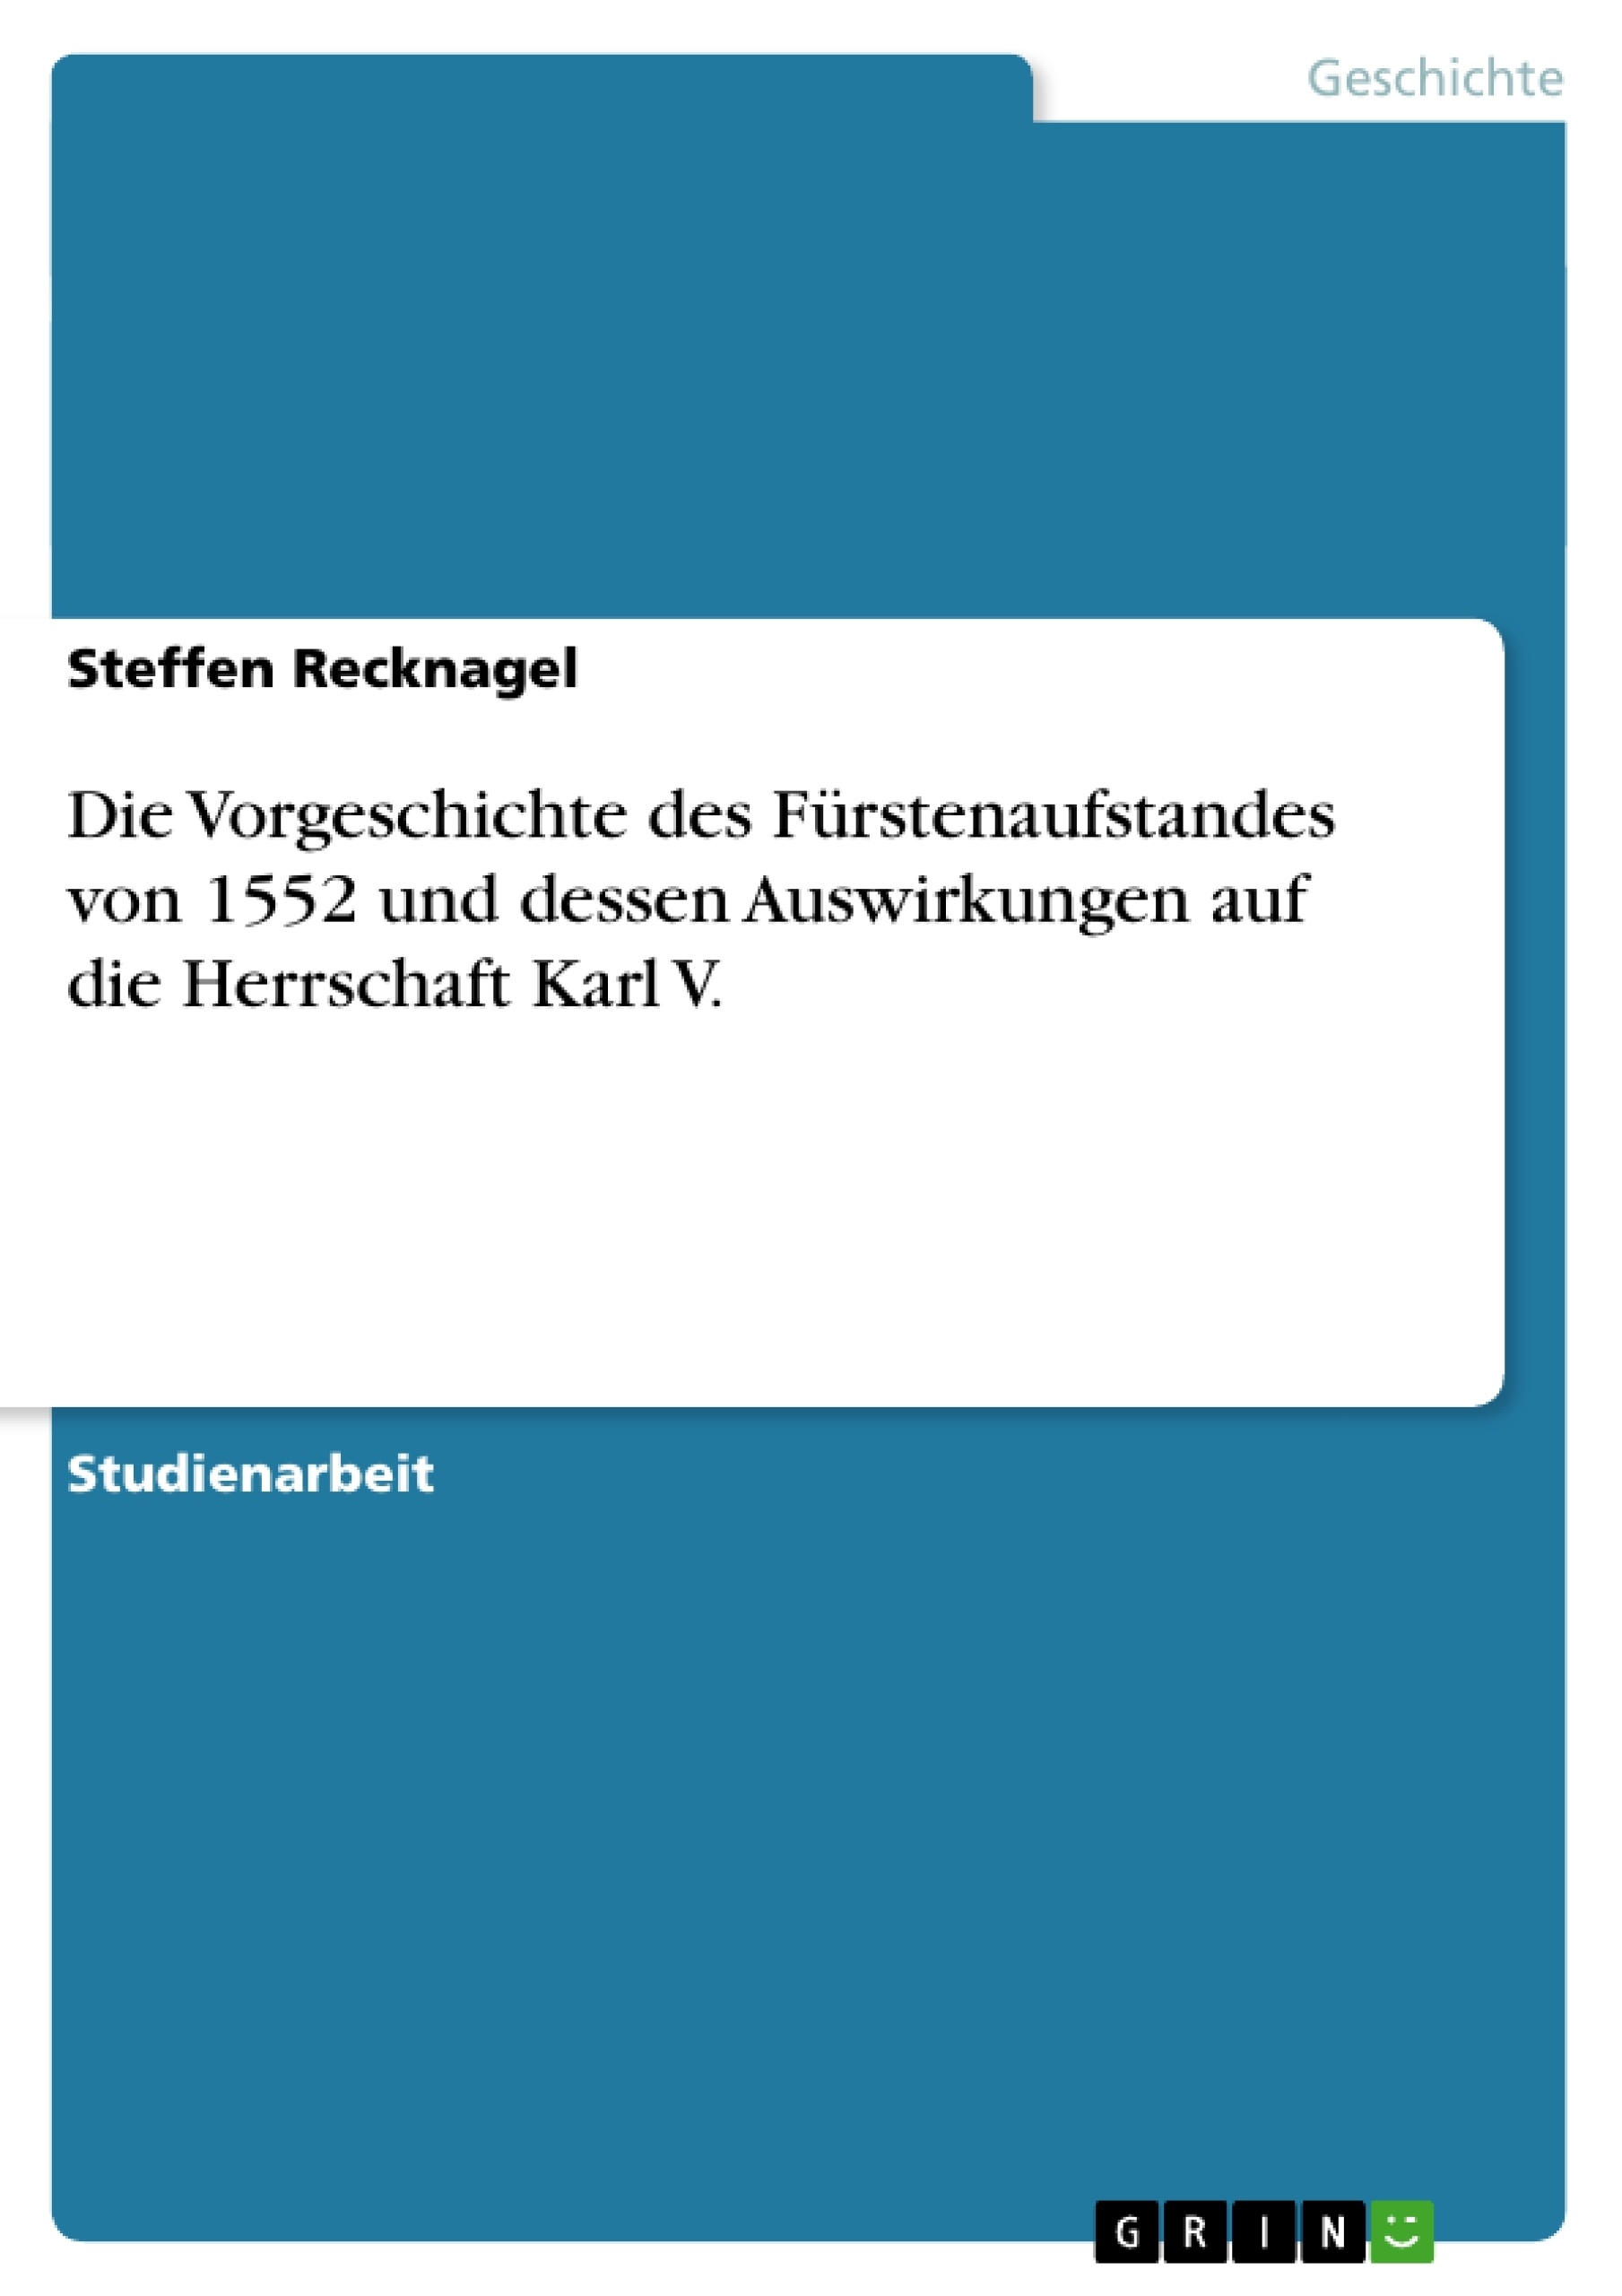 Title: Die Vorgeschichte des Fürstenaufstandes von 1552 und dessen Auswirkungen auf die Herrschaft Karl V.